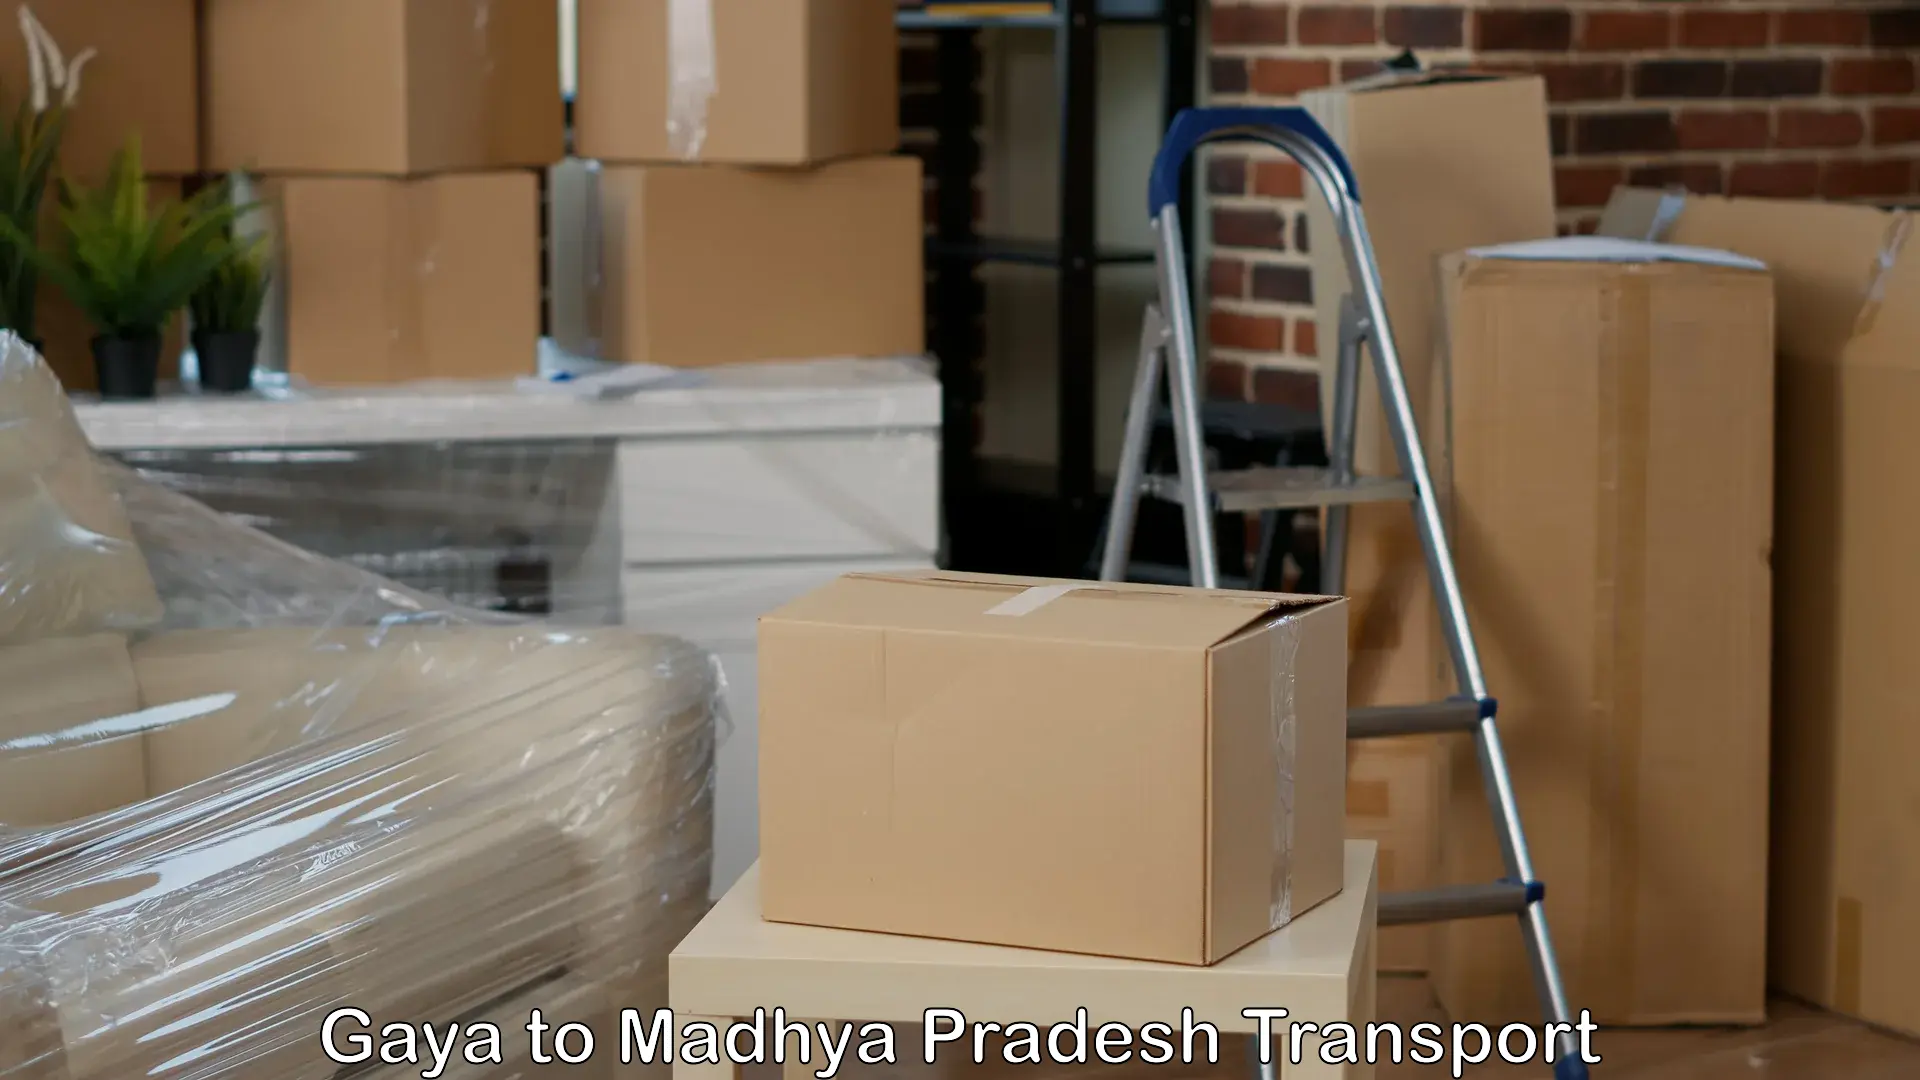 Furniture transport service Gaya to Nagda